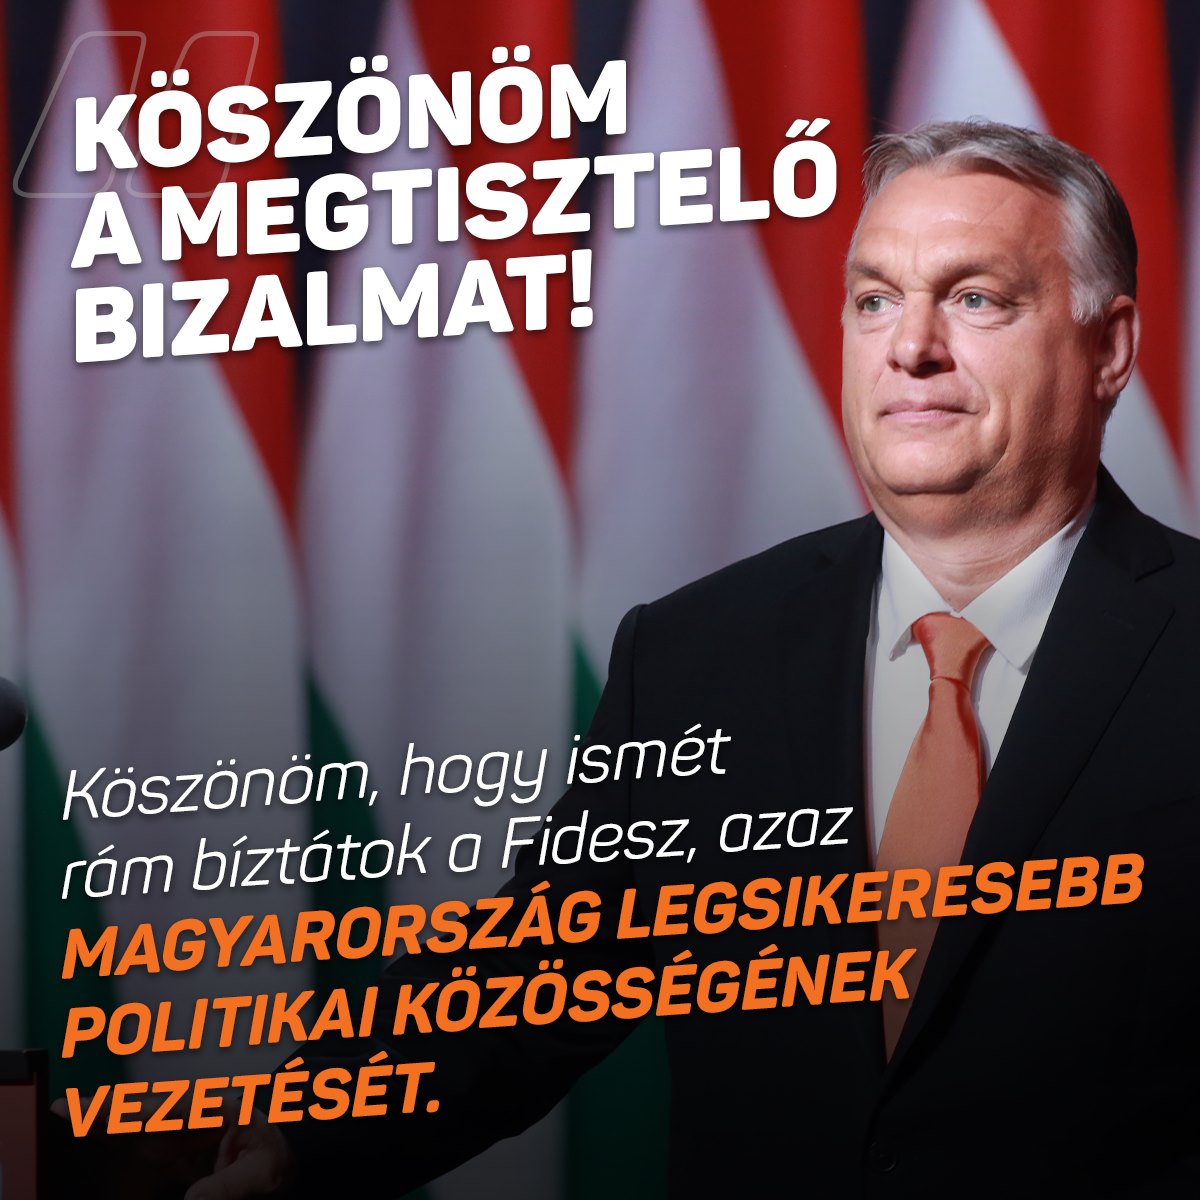 Orbán Viktor a Fidesz elnöke! „Mindenekelőtt köszönetet akarok mondani Nektek, kedves Barátaim. Köszönöm a megtisztelő bizalmat! Köszönöm, hogy ismét rám bíztátok a Fidesz, azaz Magyarország legsikeresebb politikai közösségének vezetését!”